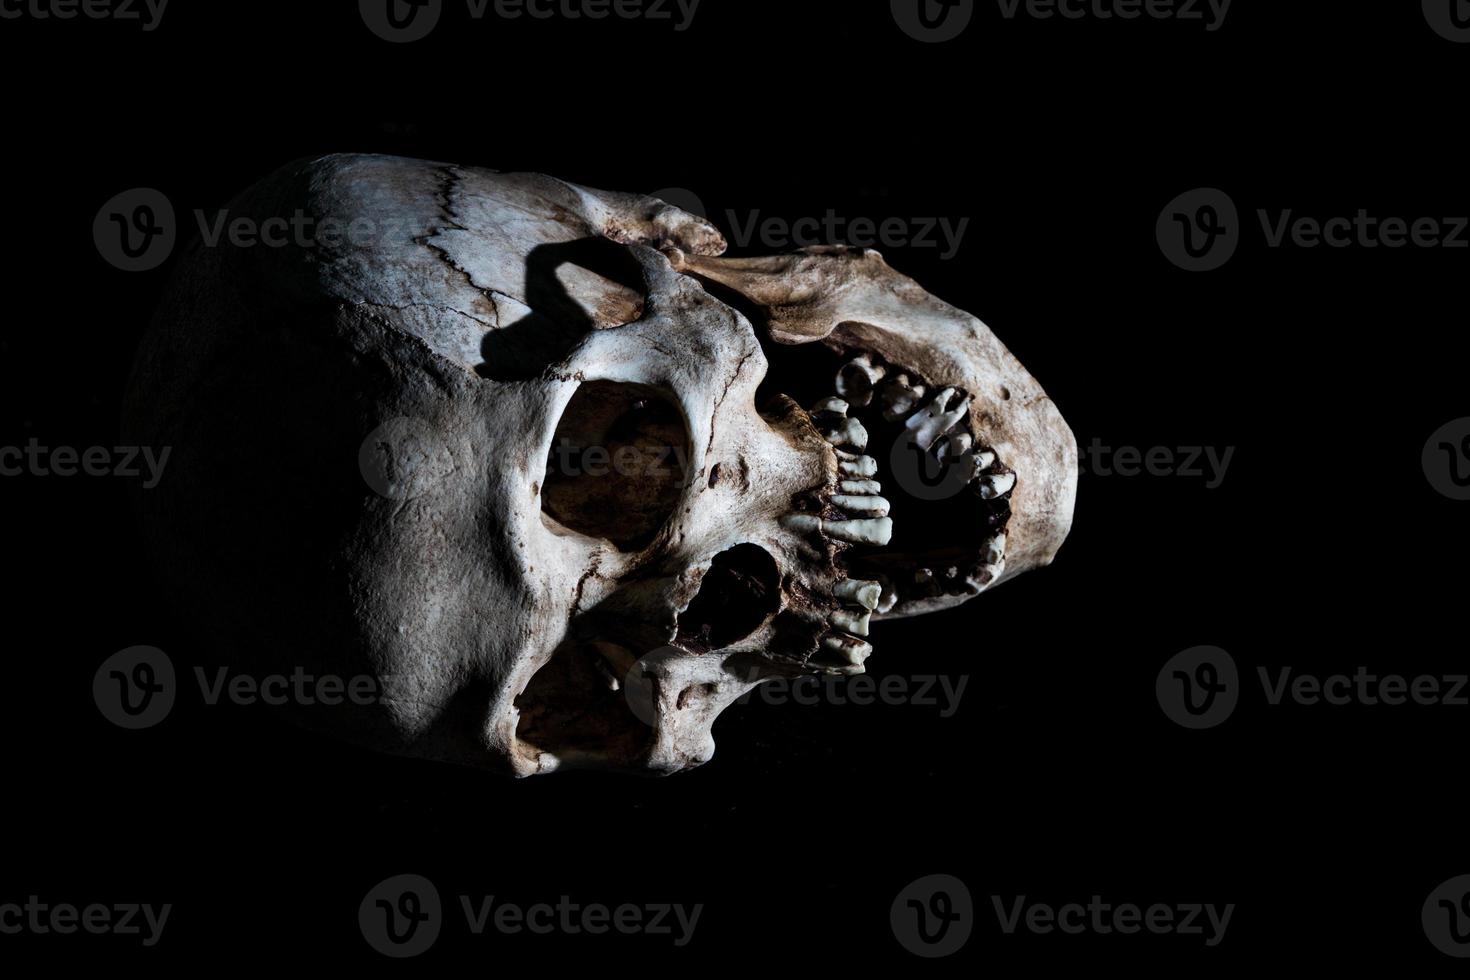 cabeça de crânio de esqueleto humano isolada em preto foto